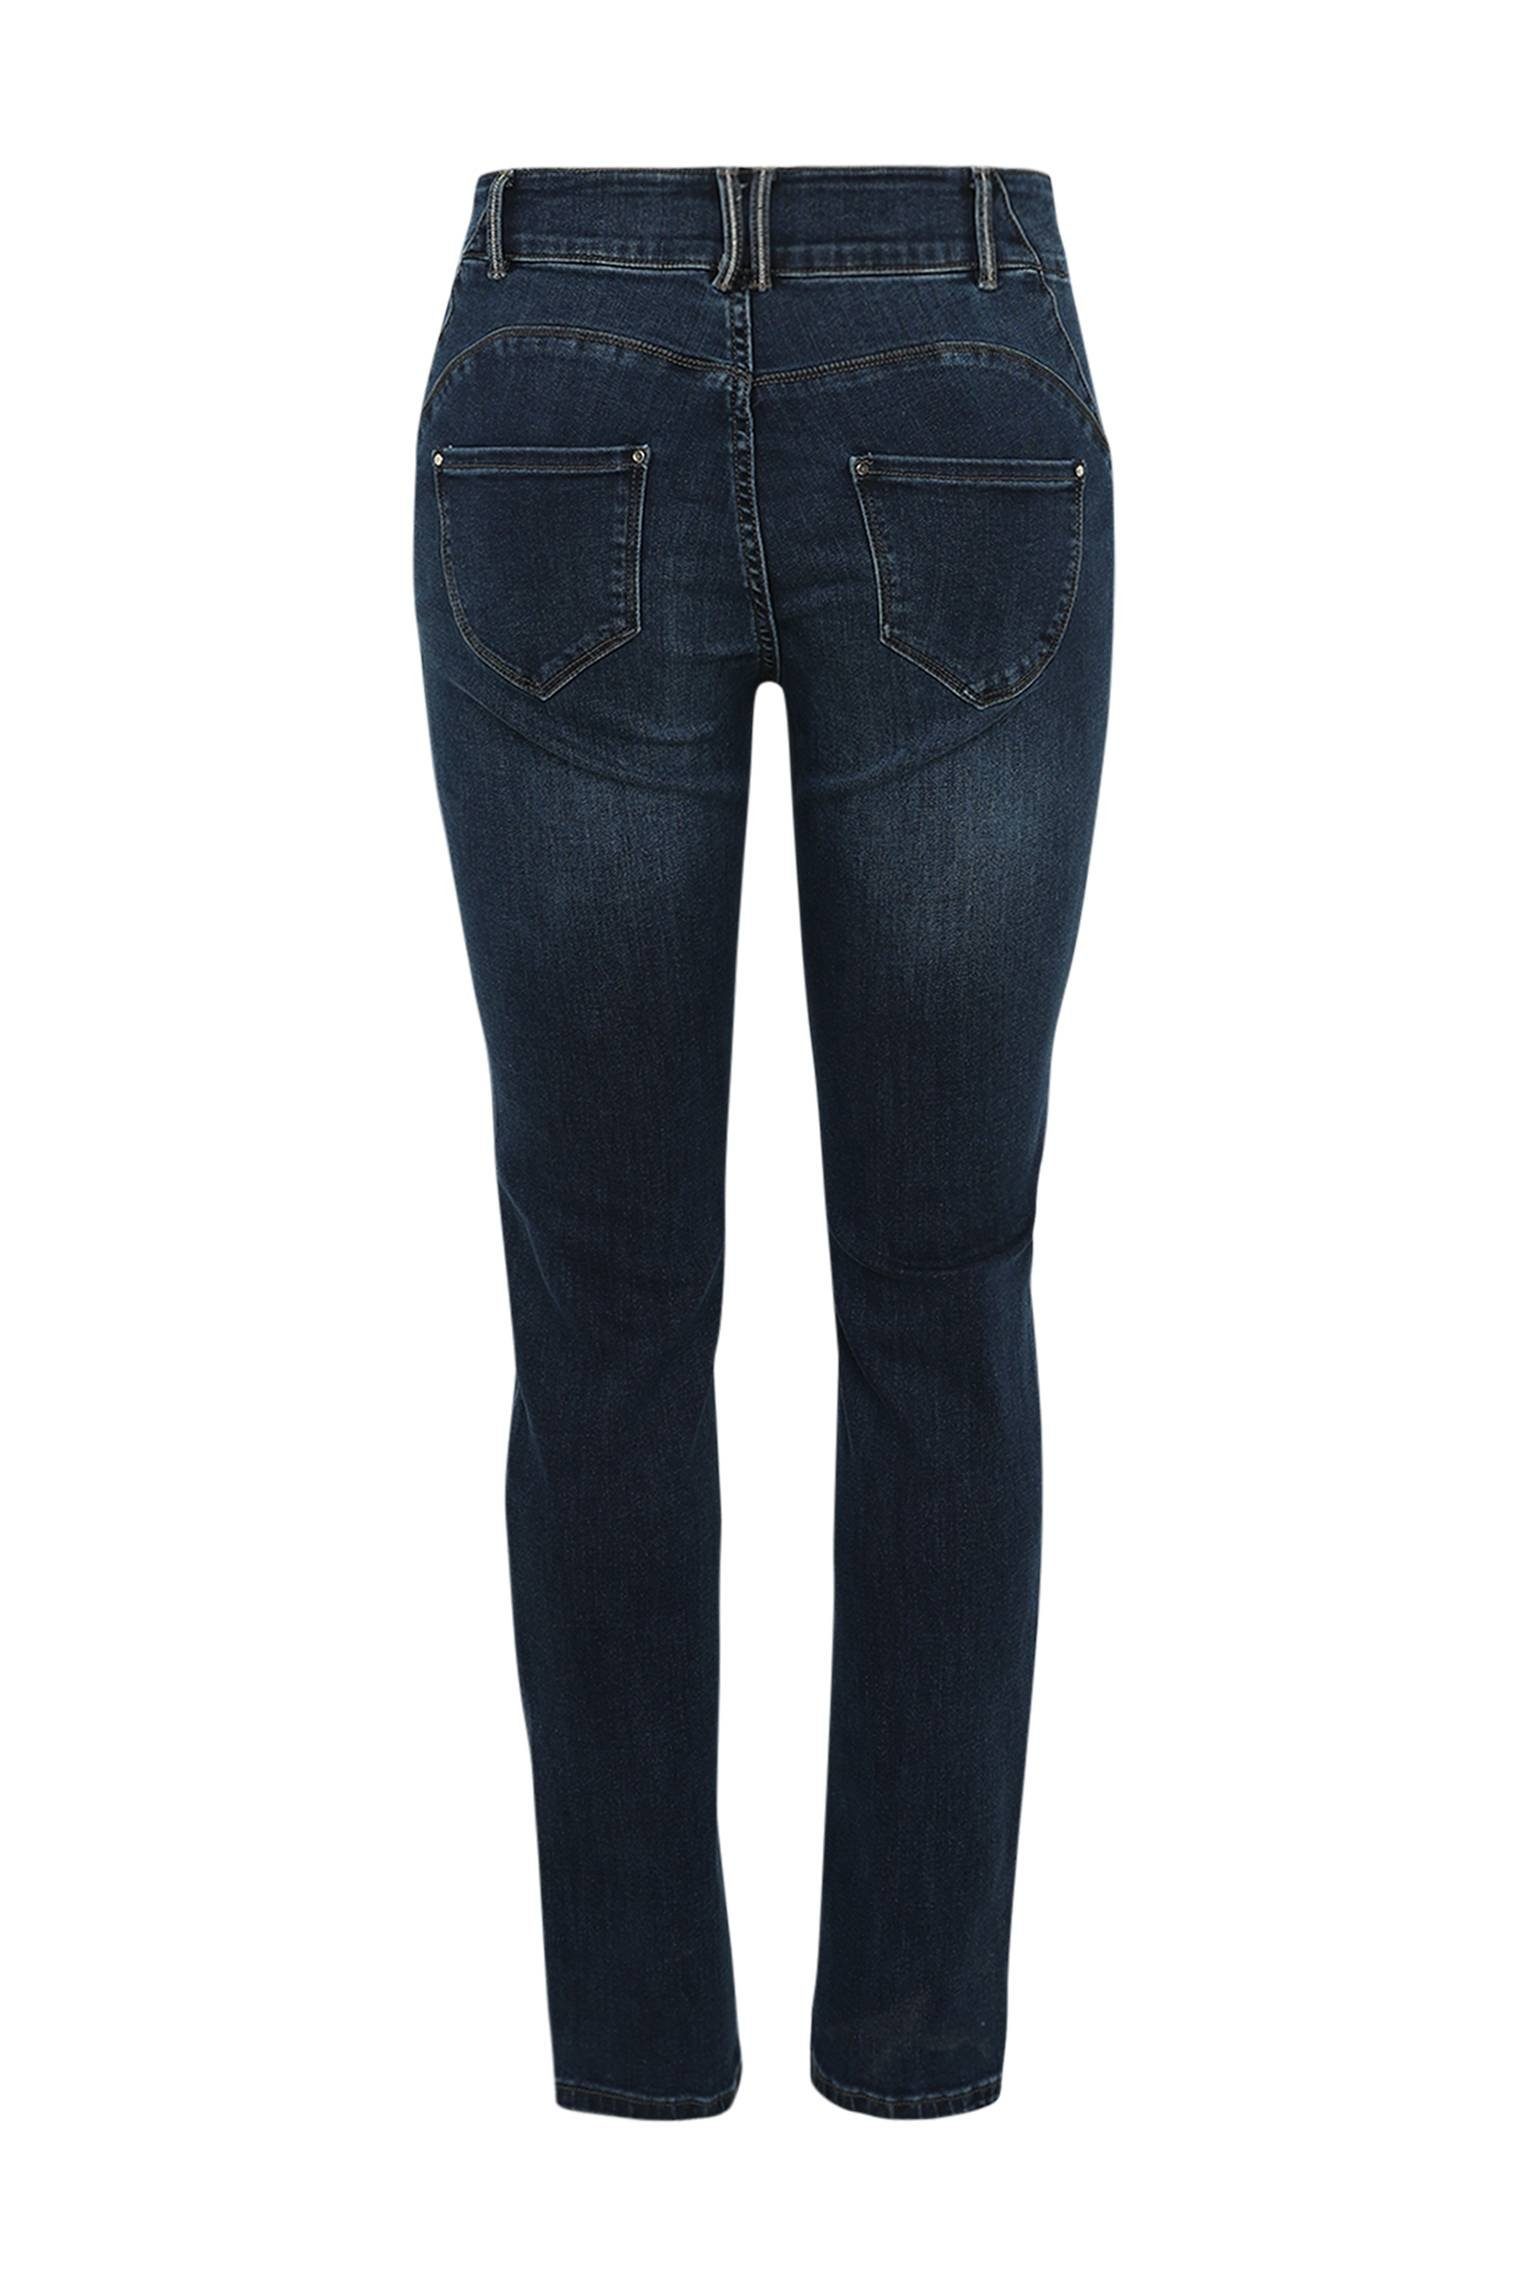 Paprika 5-Pocket-Jeans Push-Up Slim-Fit-Jeans Louise Mit L32